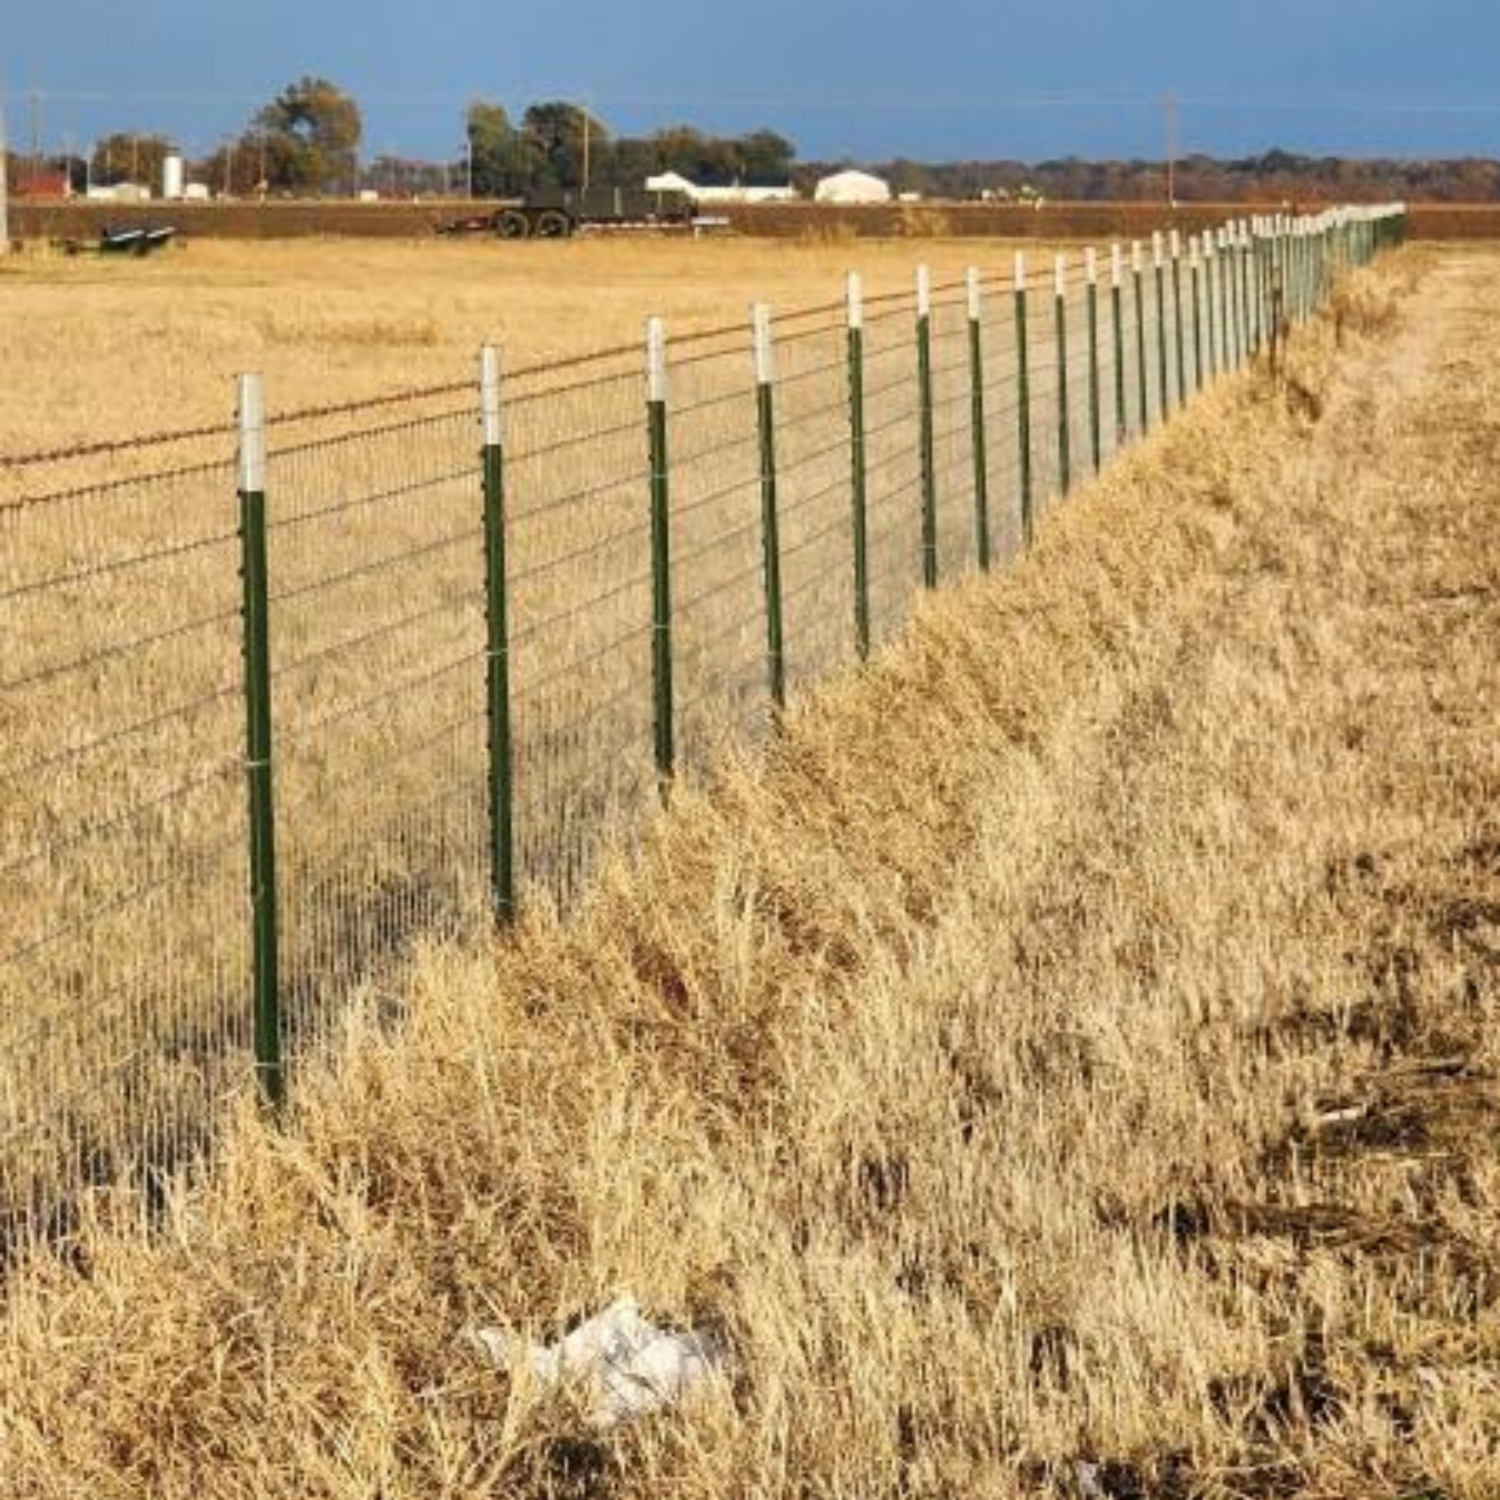 field fence